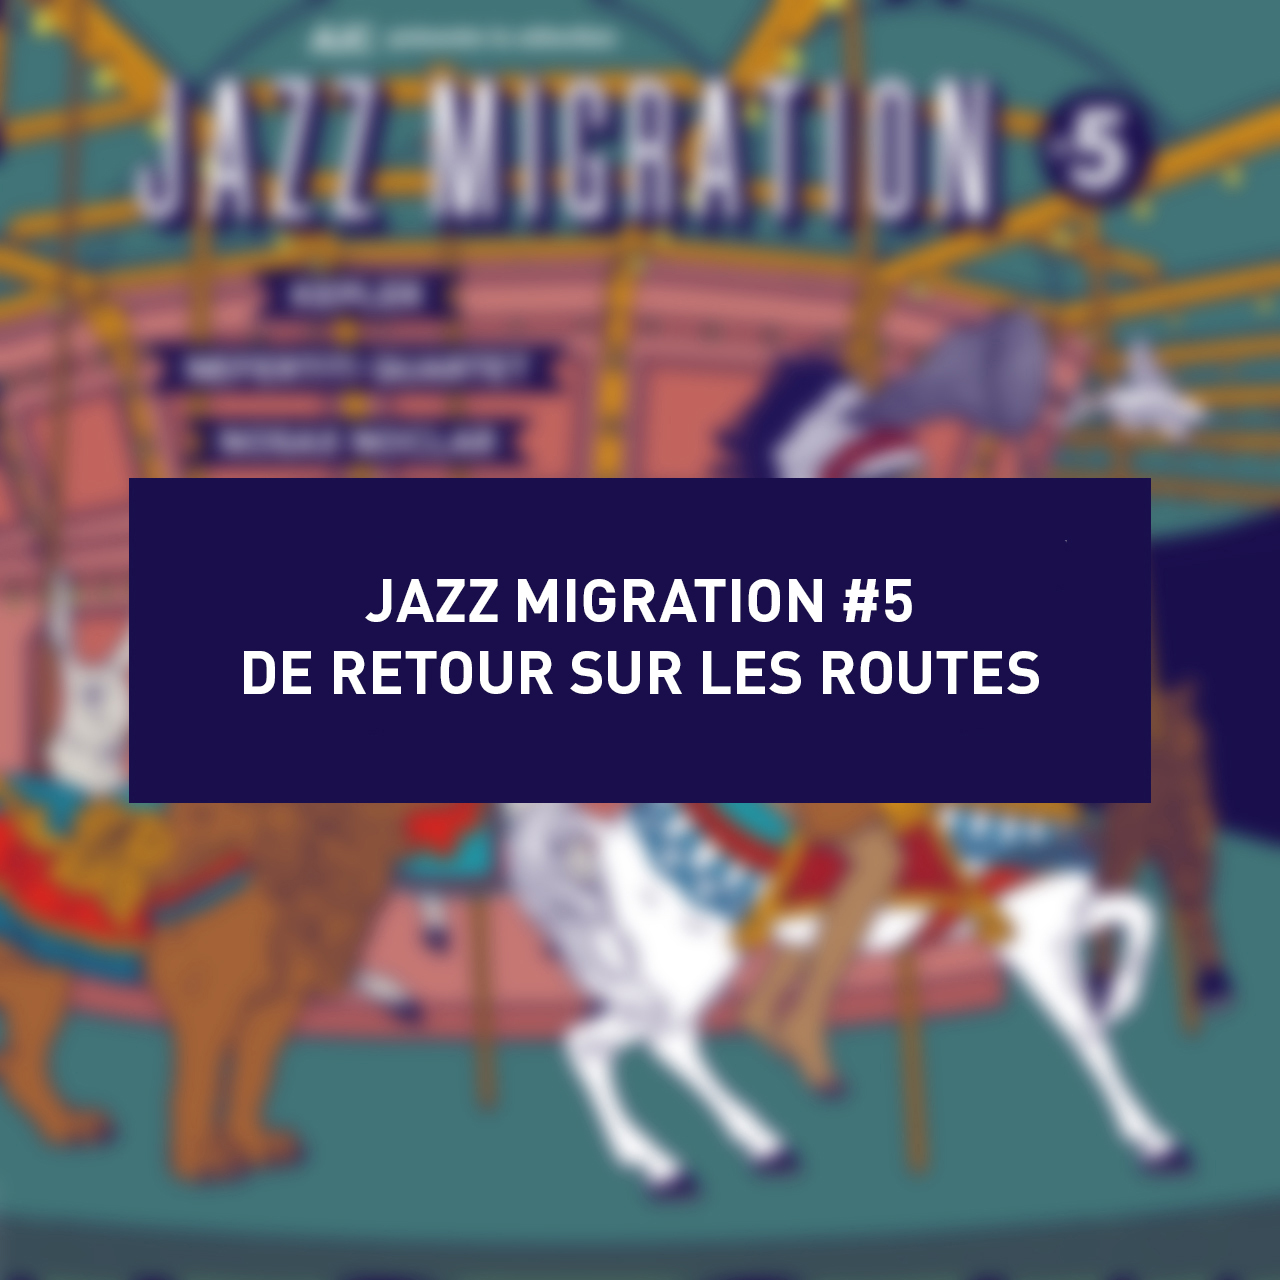 Lire la suite à propos de l’article Jazz Migration #5 de retour !